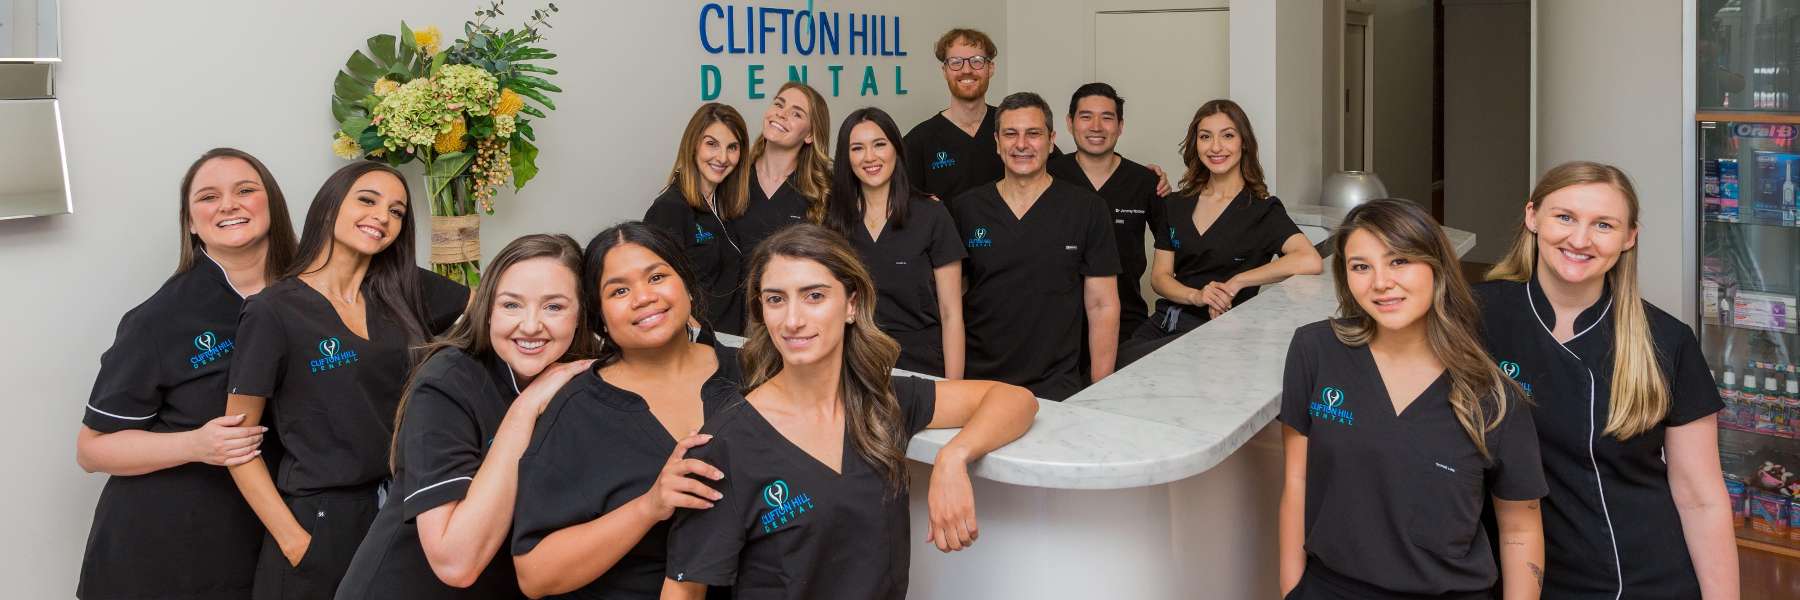 clifton hill dentist